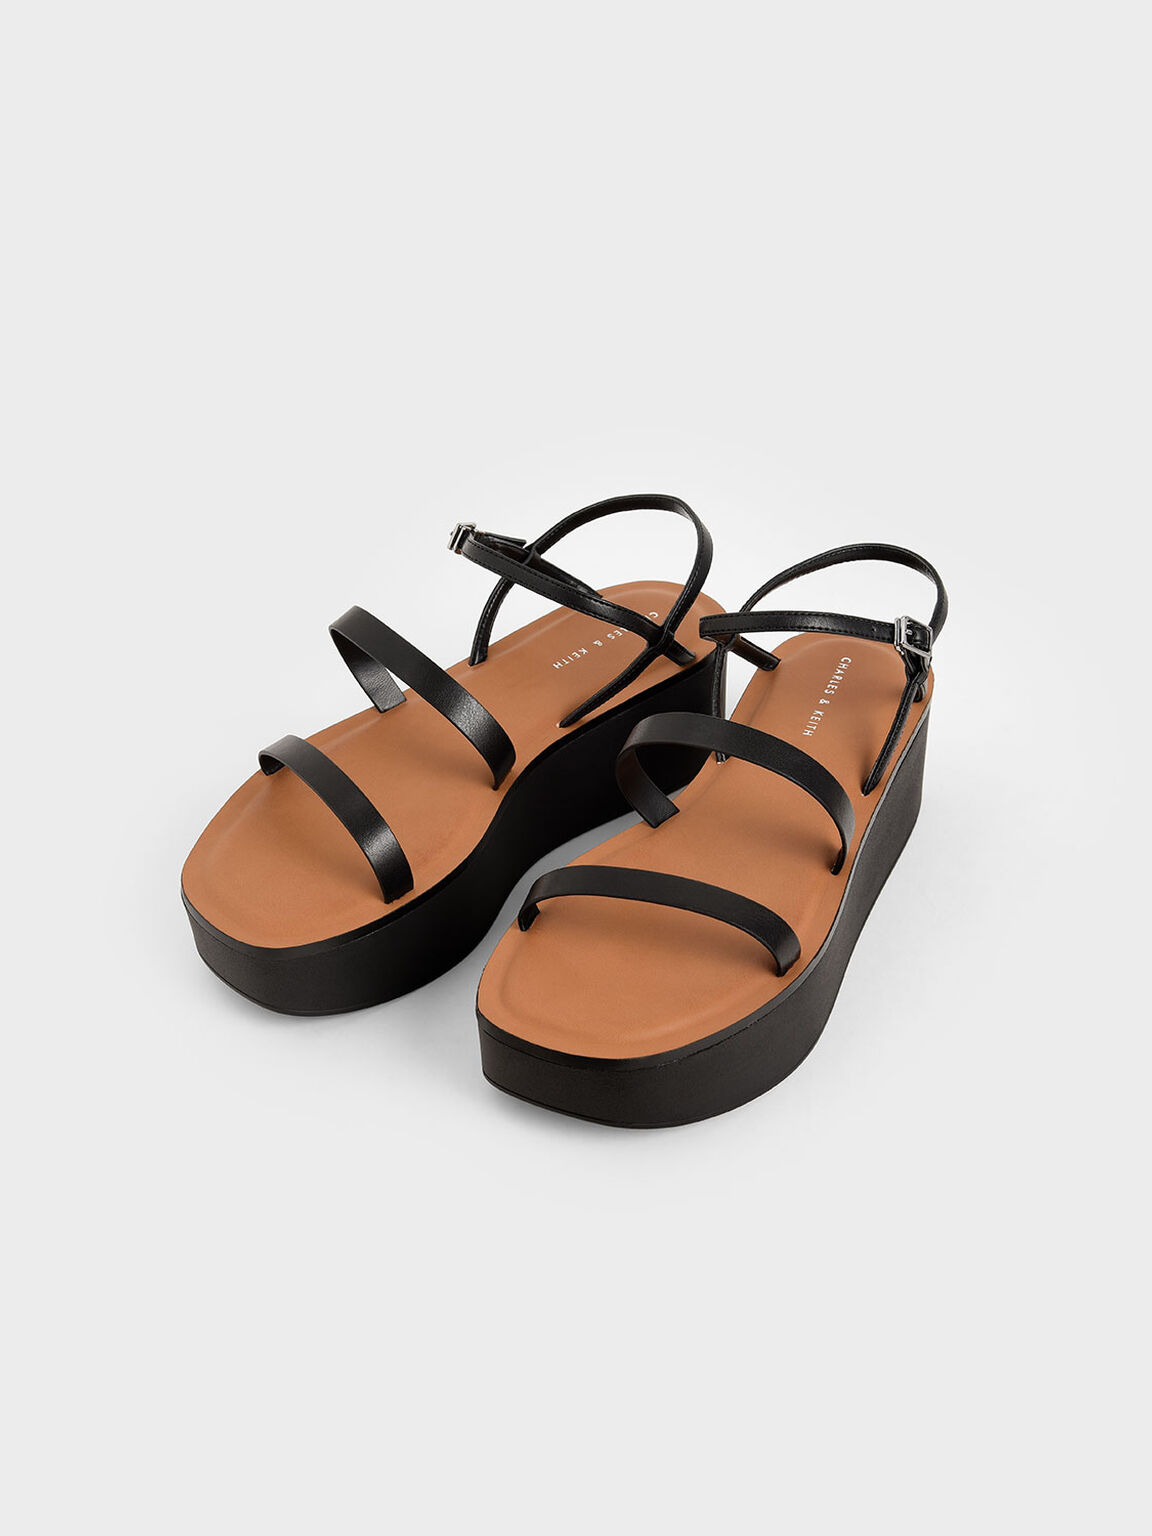 Strappy Flatform Sandals, Black, hi-res